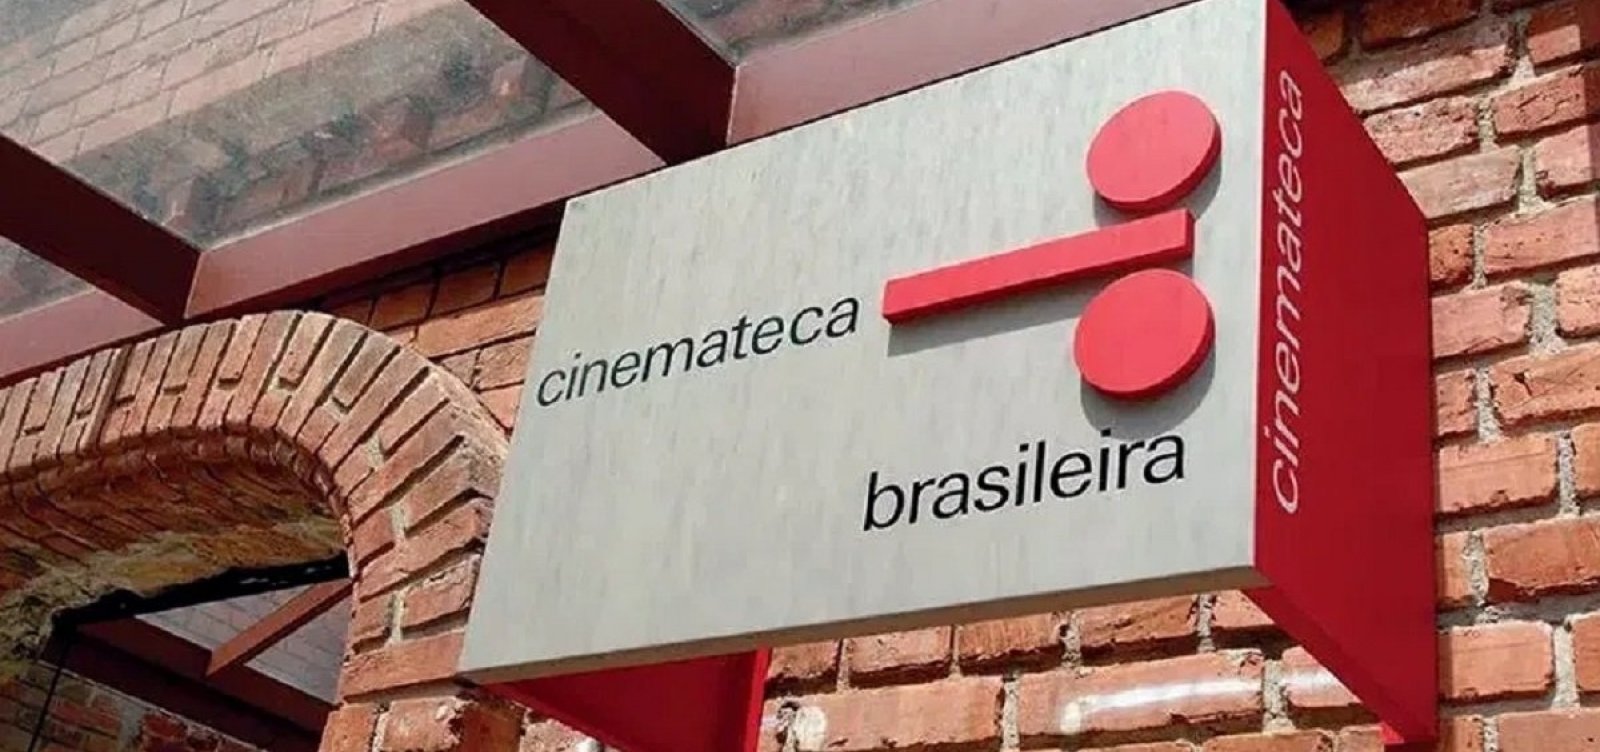 Acervo da Cinemateca Brasileira está abandonado desde agosto do ano passado, alerta manifesto